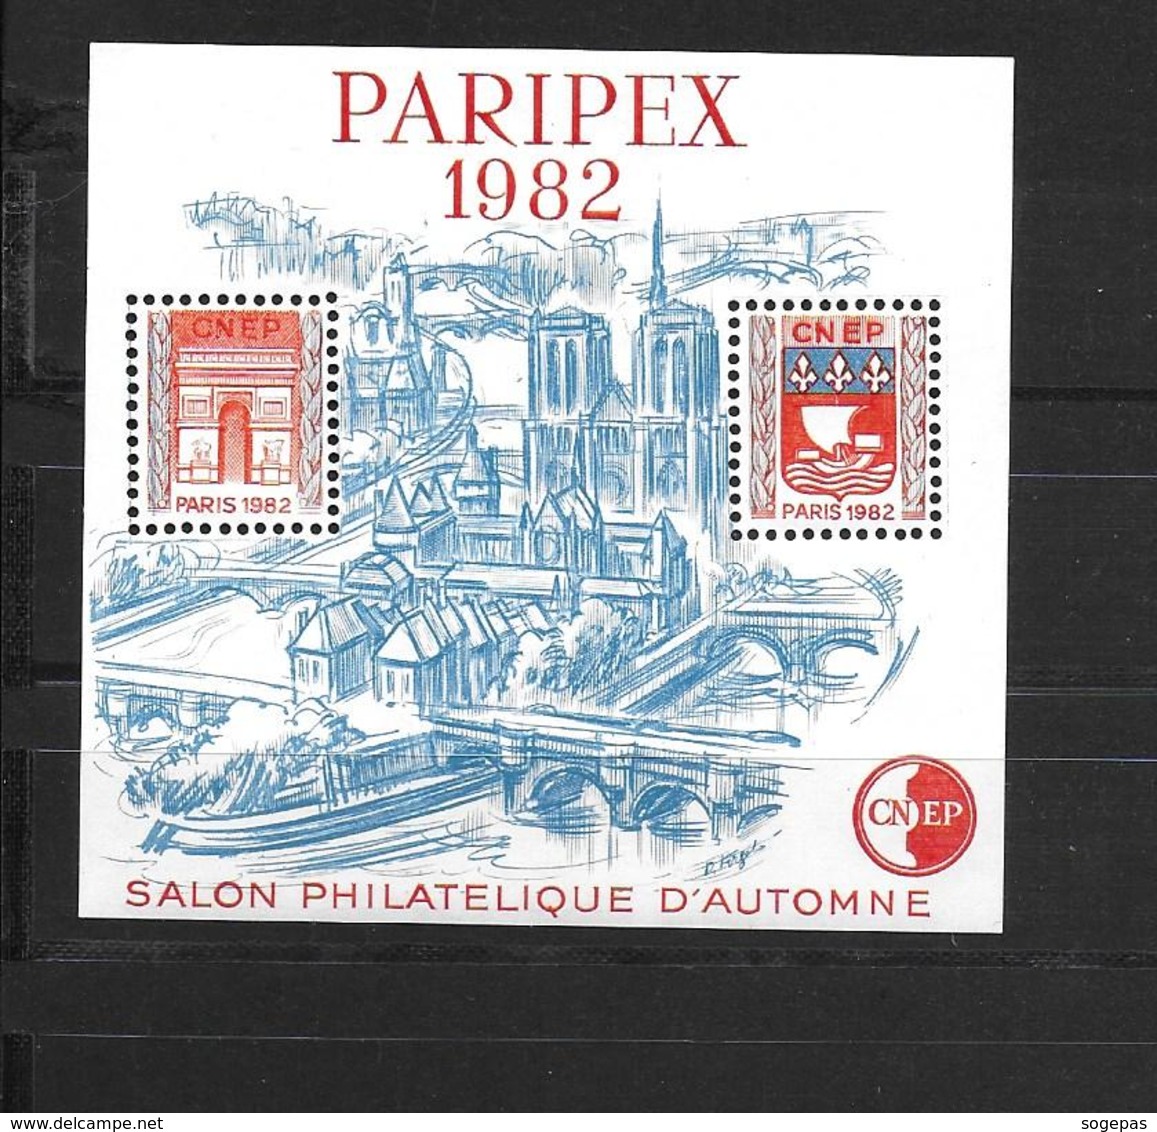 FRANCE PARIPEX 1982 NEUF ** SALON PHILATÉLIQUE D'AUTOMNE - CNEP